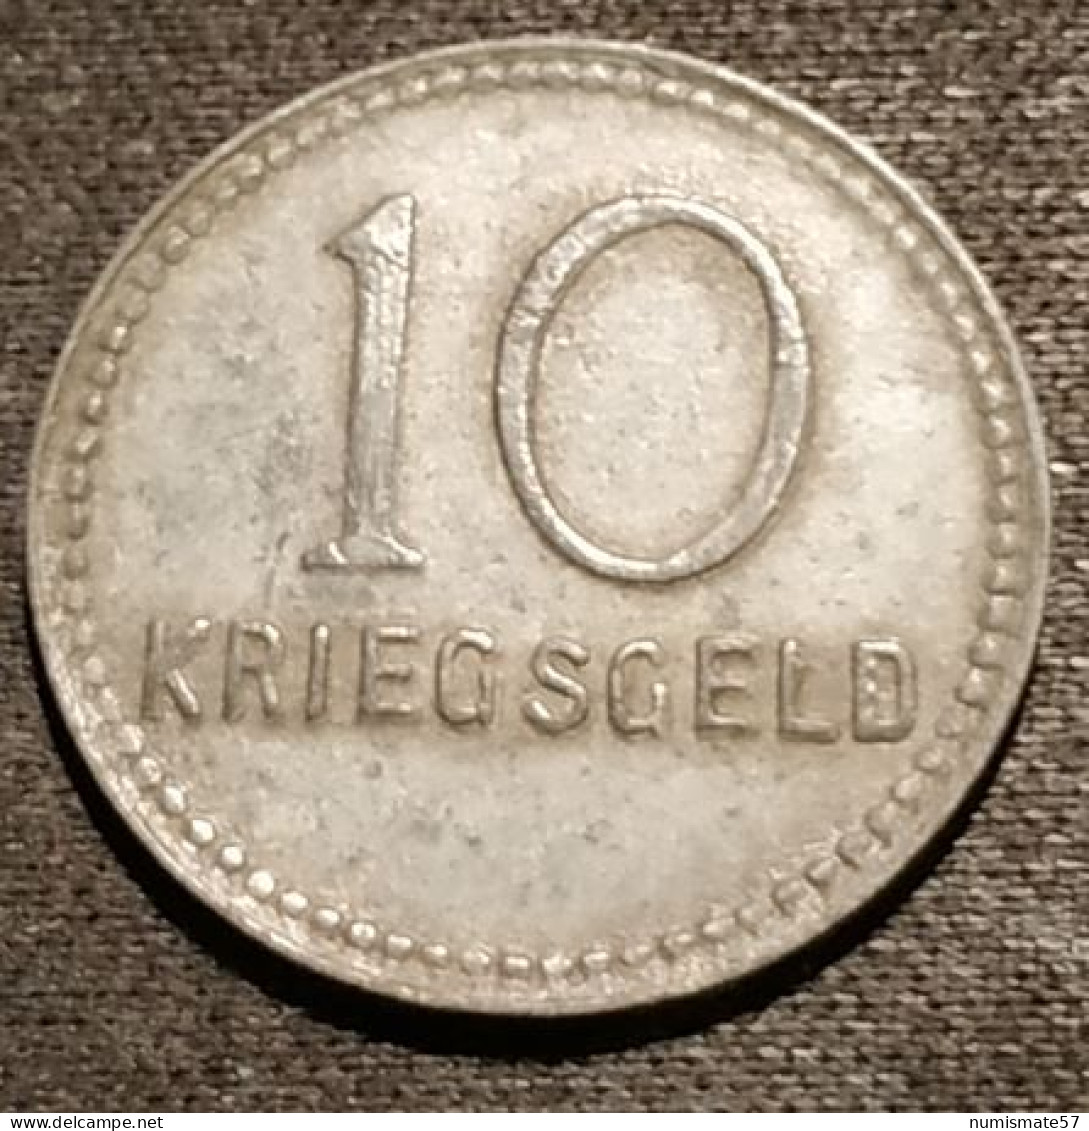 ALLEMAGNE - GERMANY - 10 Pfennig Kaiserslautern 1917 - Funck# 231.2 - ( KRIEGSGELD ) - 10 Pfennig